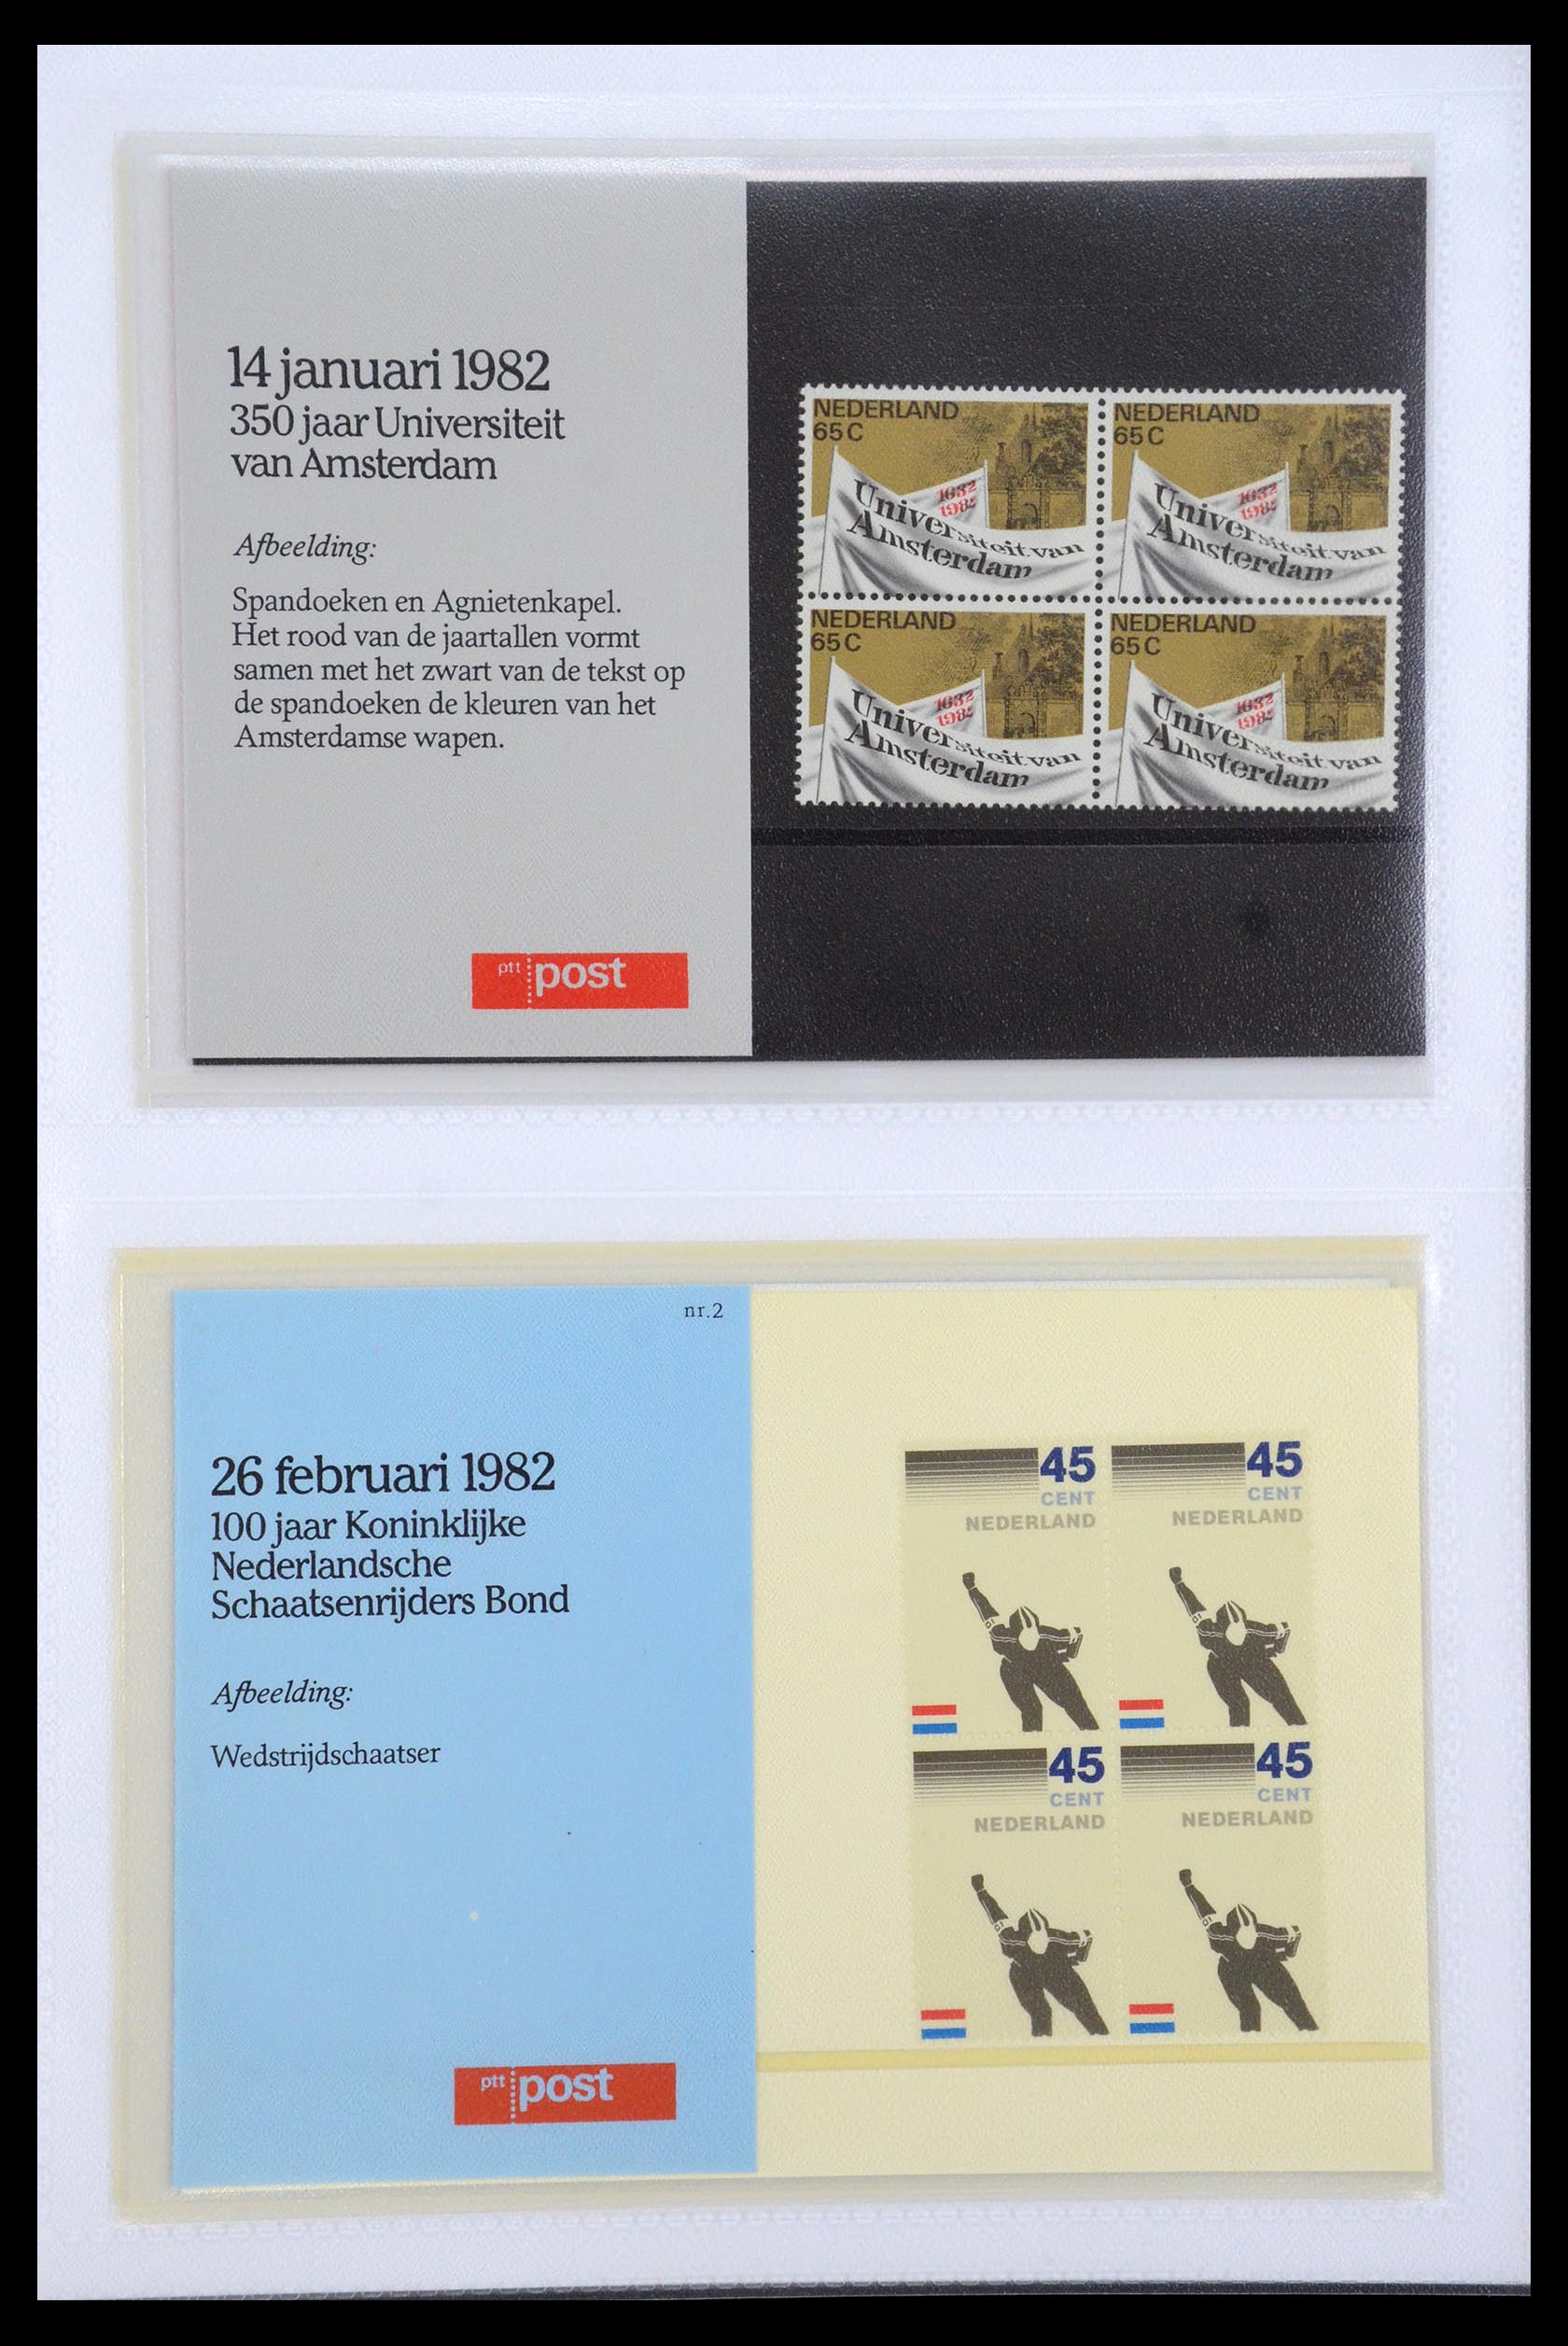 35947 001 - Stamp Collection 35947 Netherlands PTT presentation packs 1982-2019!